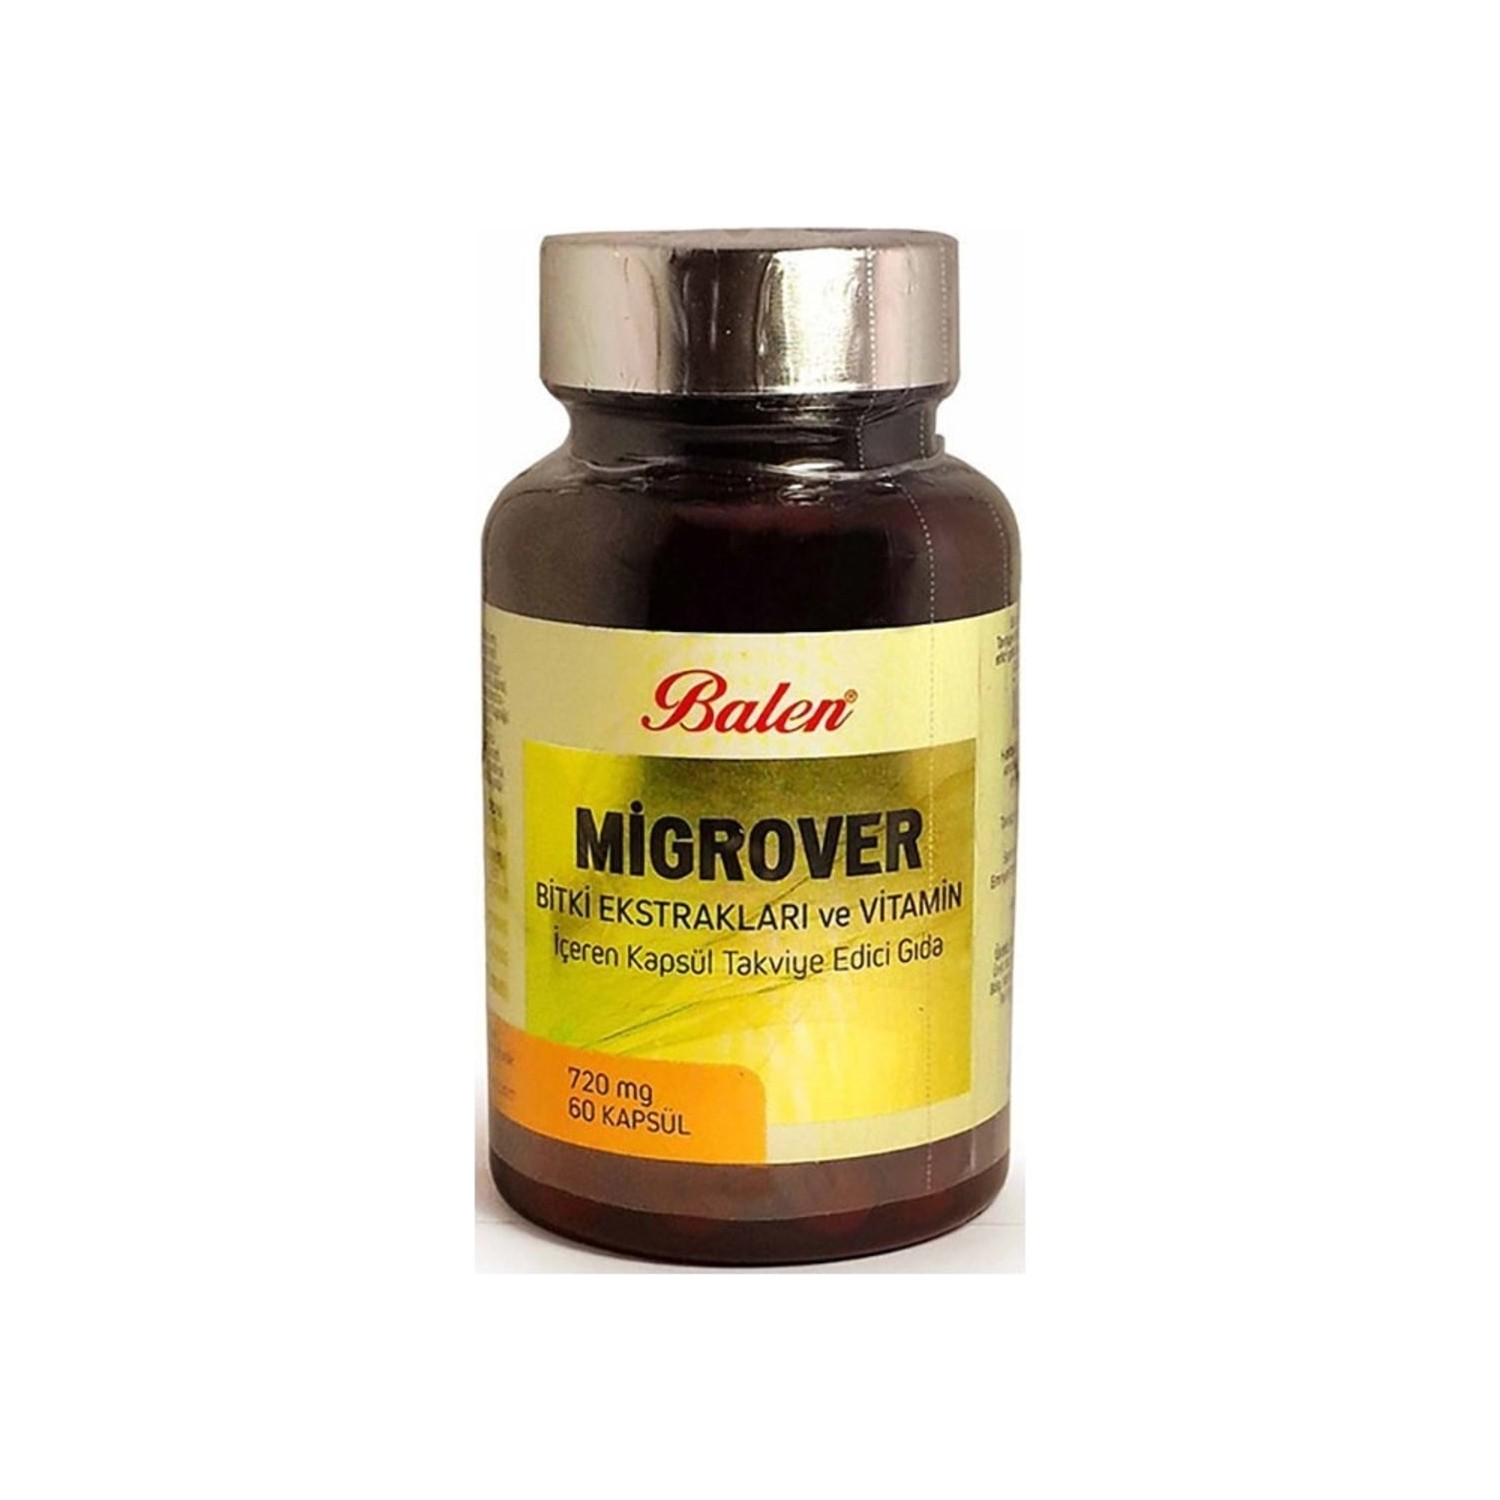 Капсулы Balen Migrover, содержащие растительные экстракты и витамины, 60 капсул, 720 мг vitamin c with flavonoids 180 capsules